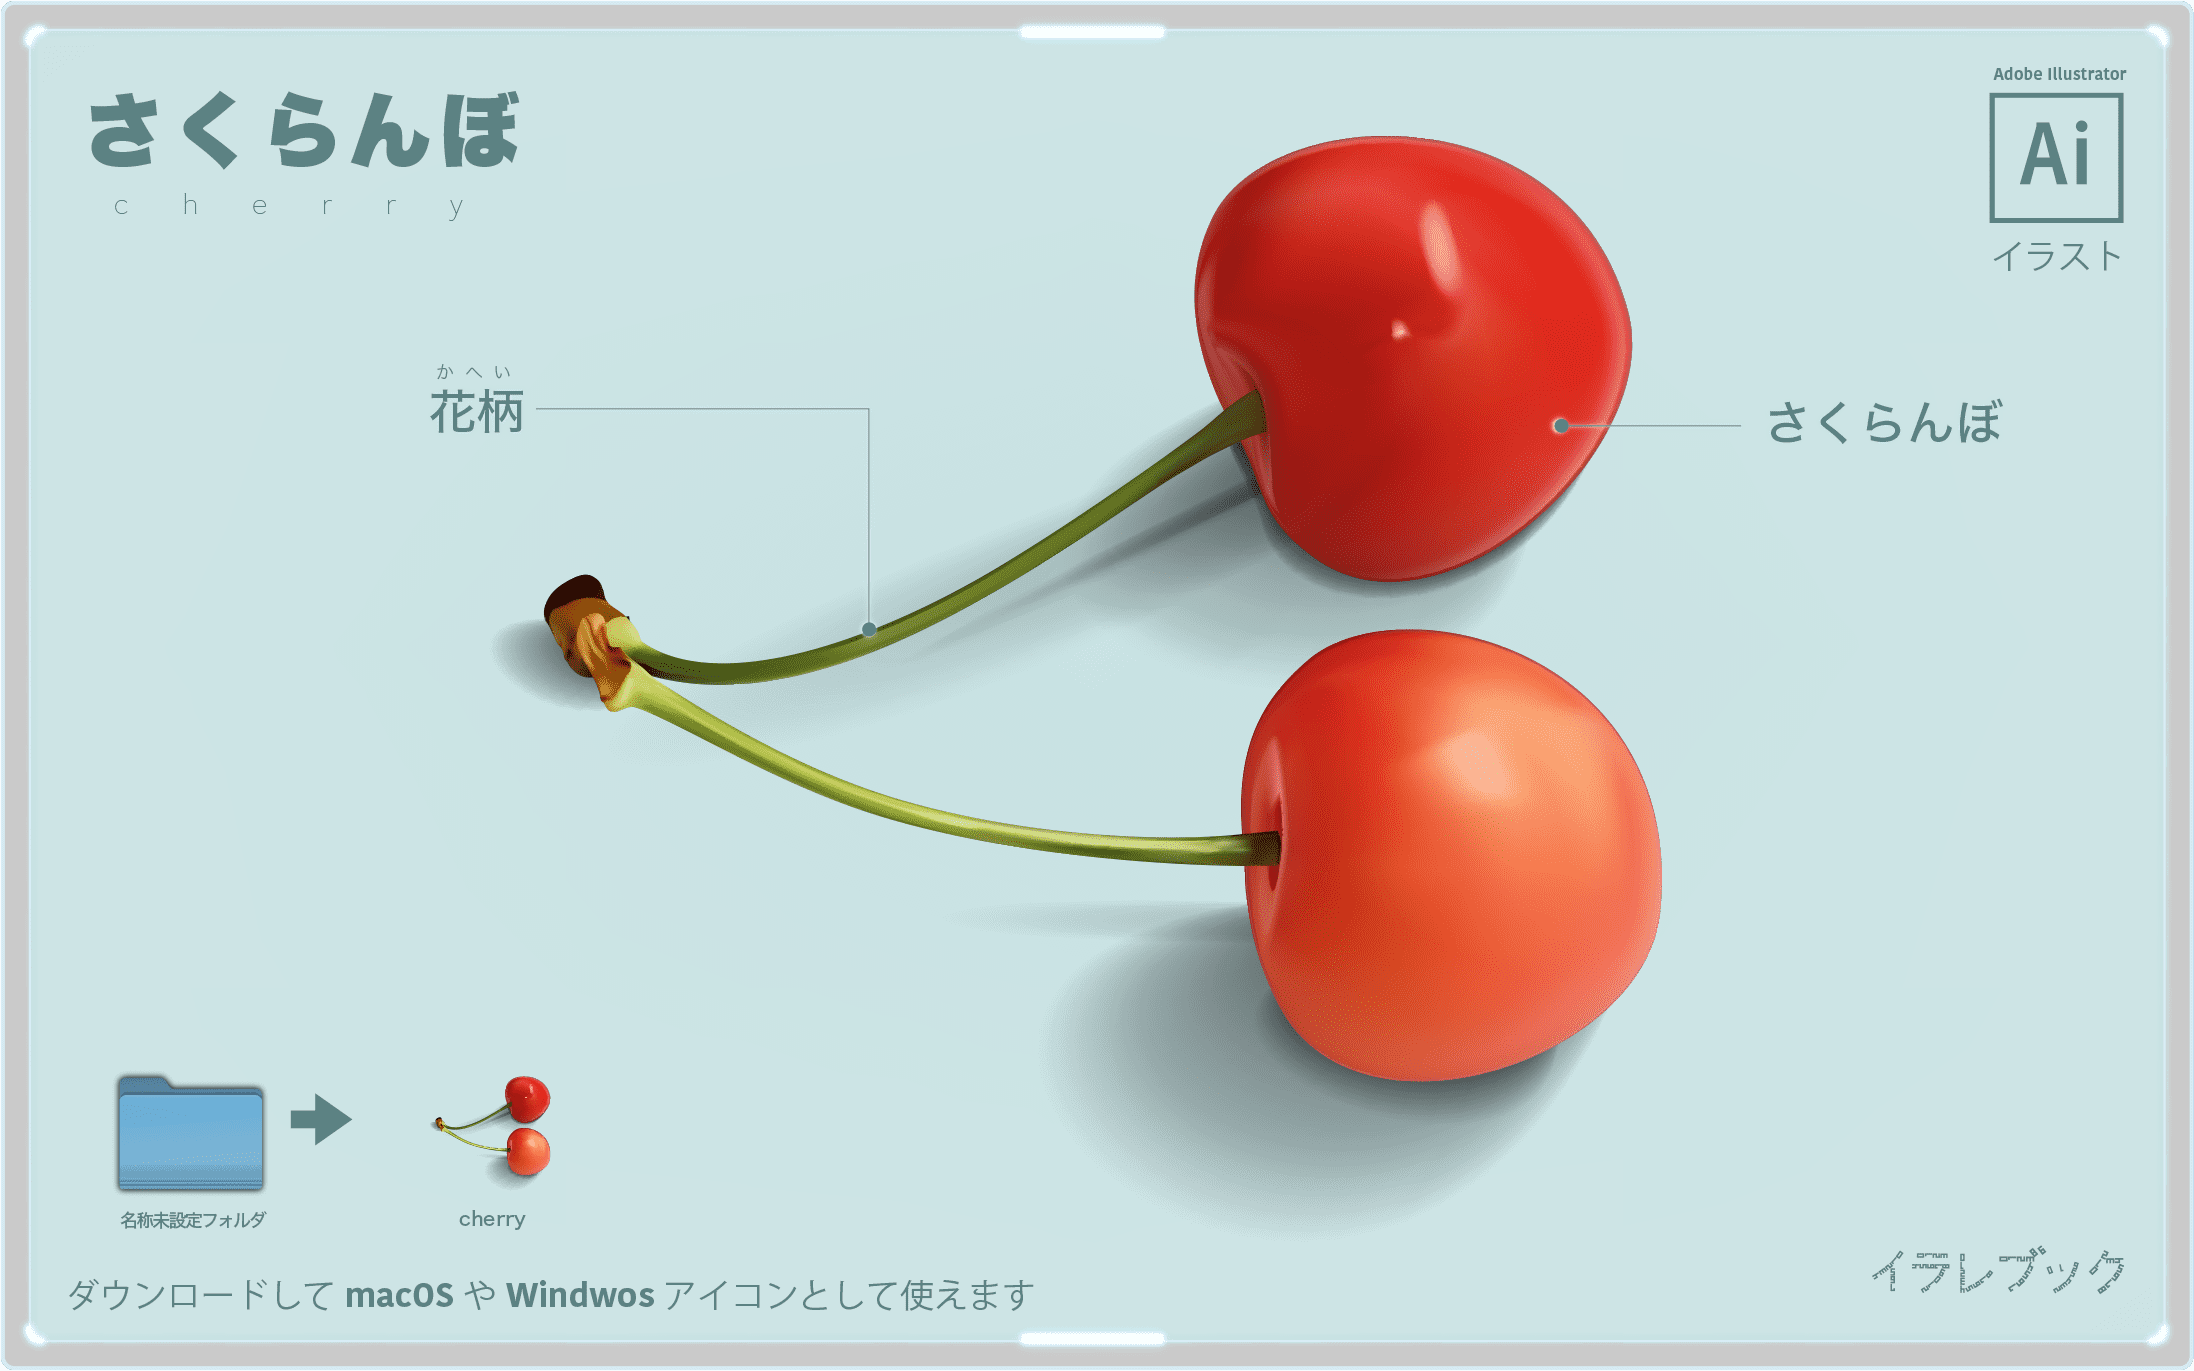 さくらんぼ イラスト 品種 歴史 栄養と美味しい選び方を画像で説明 4コマ漫画 Cherry